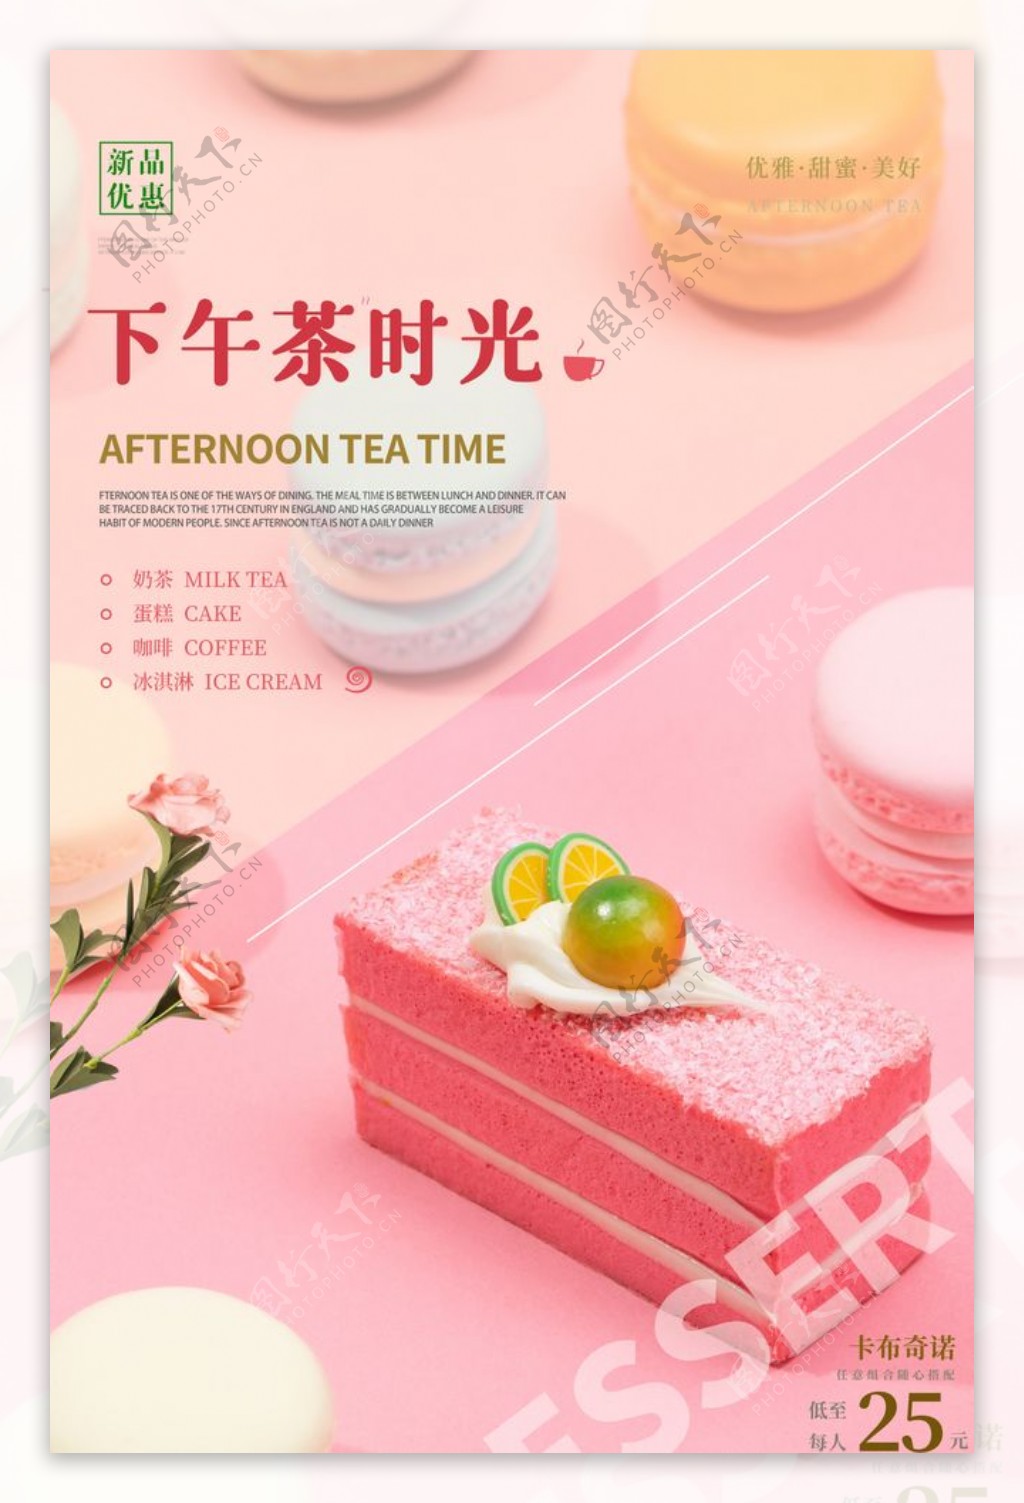 下午茶时光甜品活动宣传海报素材图片